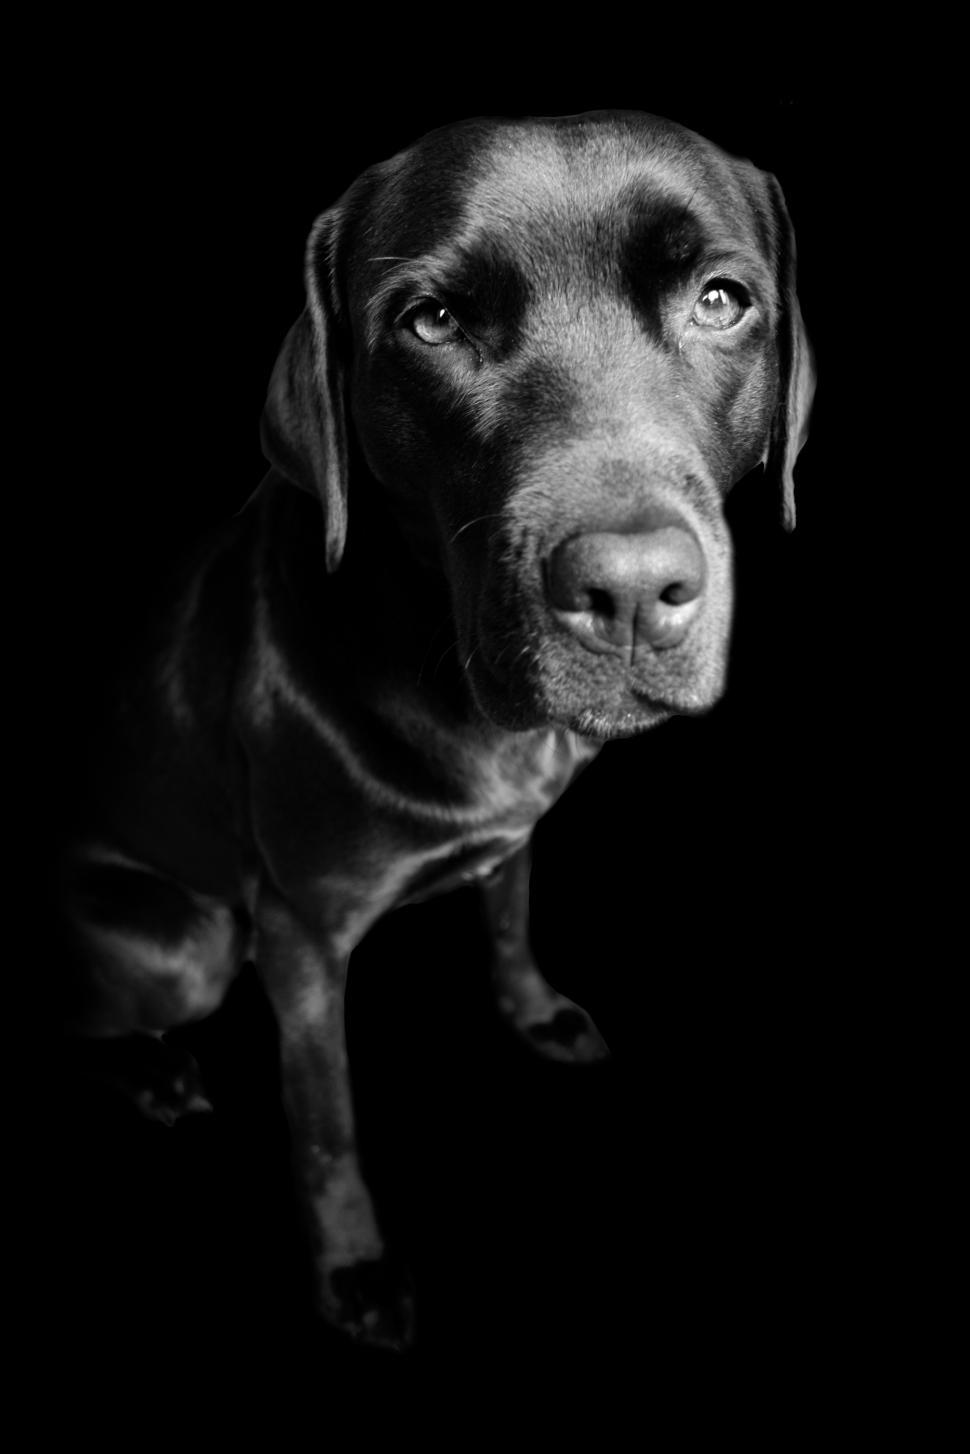 Free Image of Labrador retriever dog 